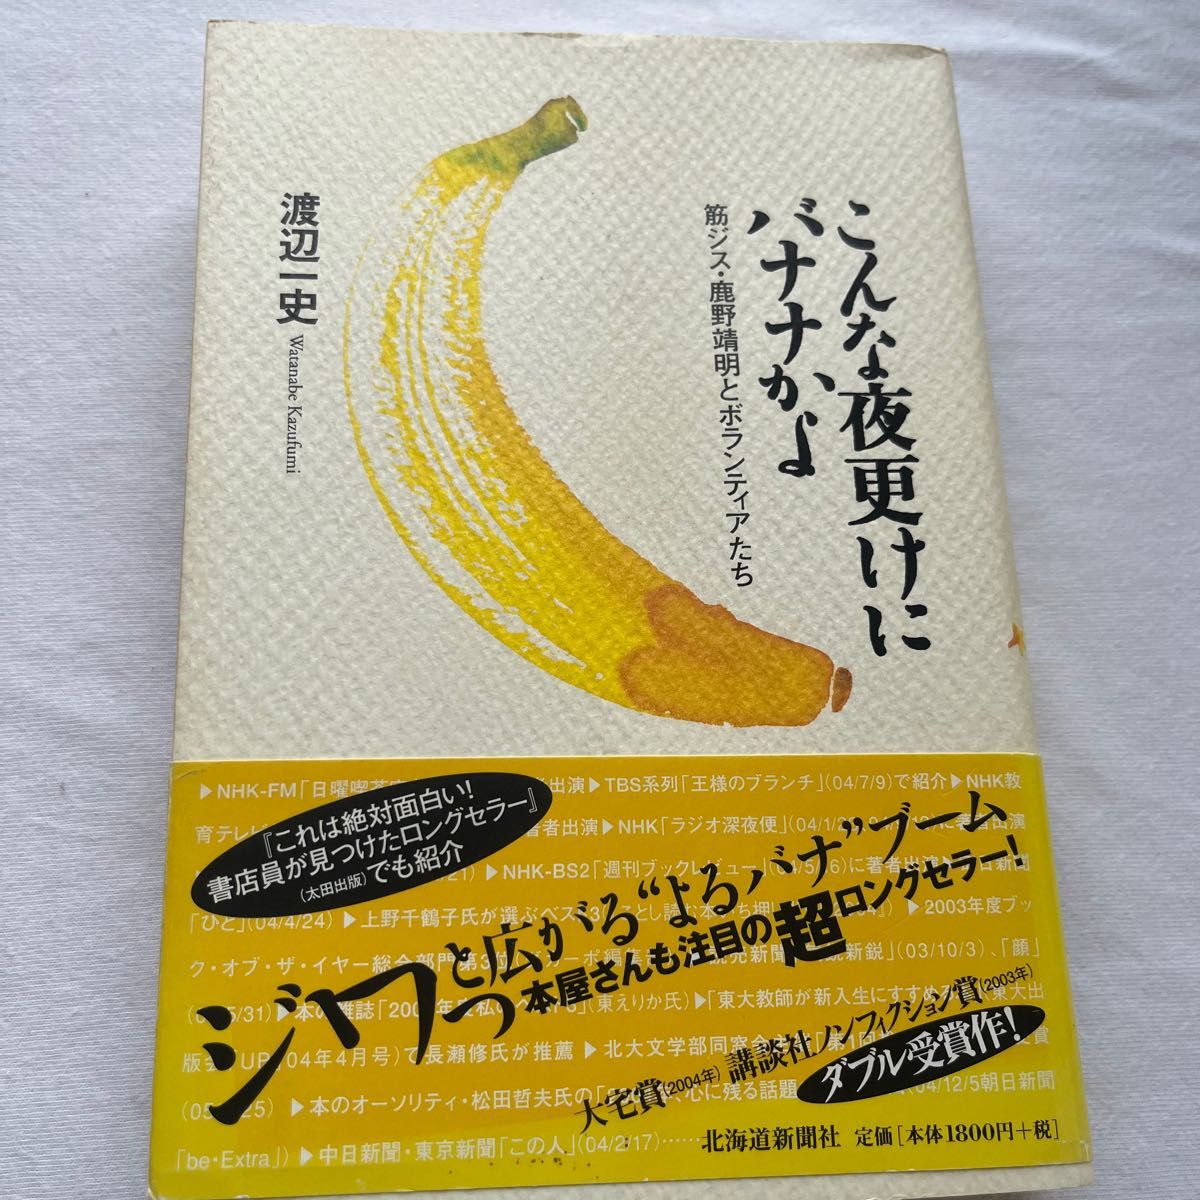 こんな夜更けにバナナかよ 渡辺一史 北海道新聞社